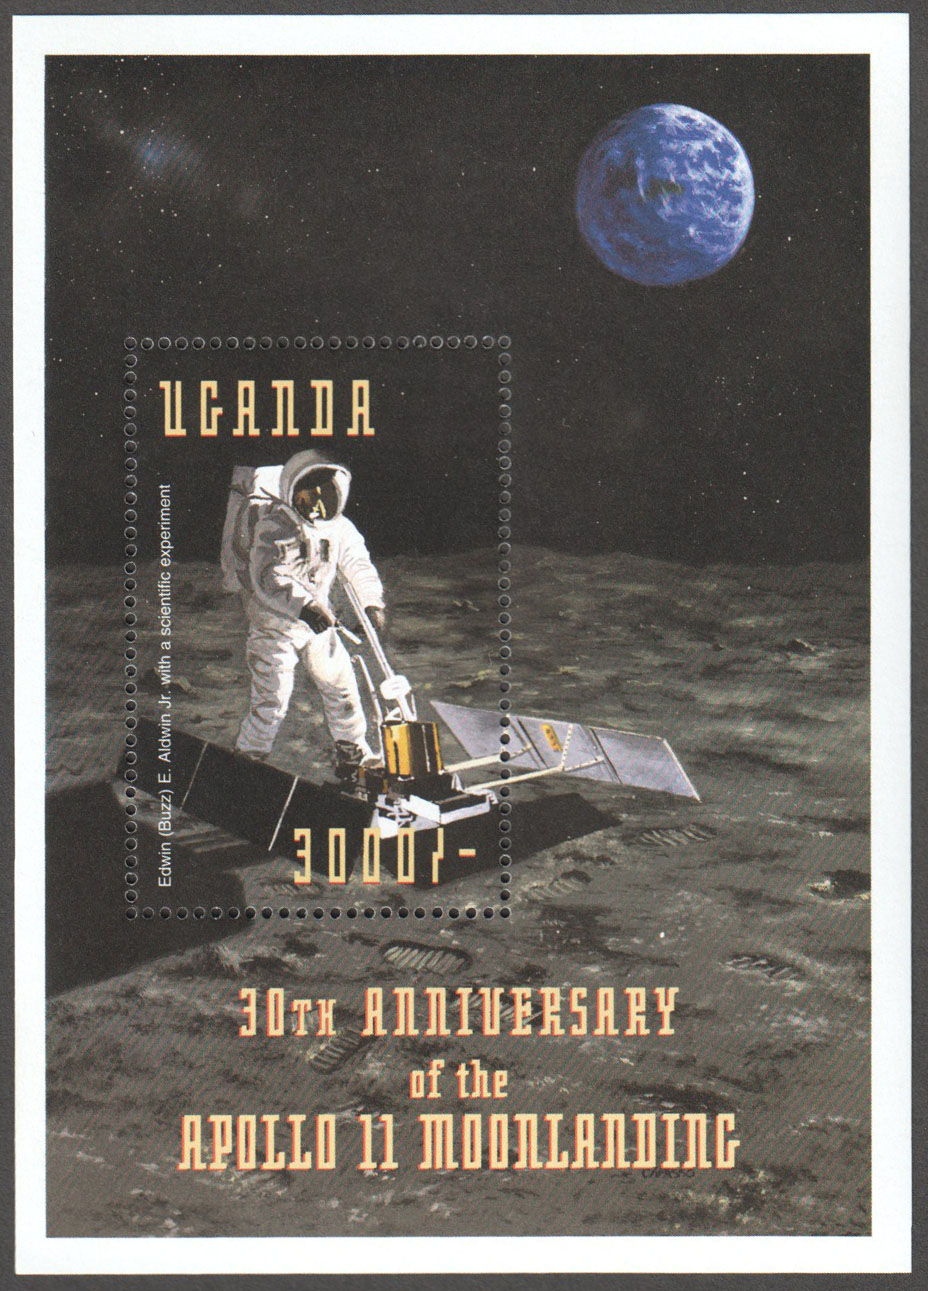 Uganda Scott 1605 MNH S/S (A13-13) - Click Image to Close